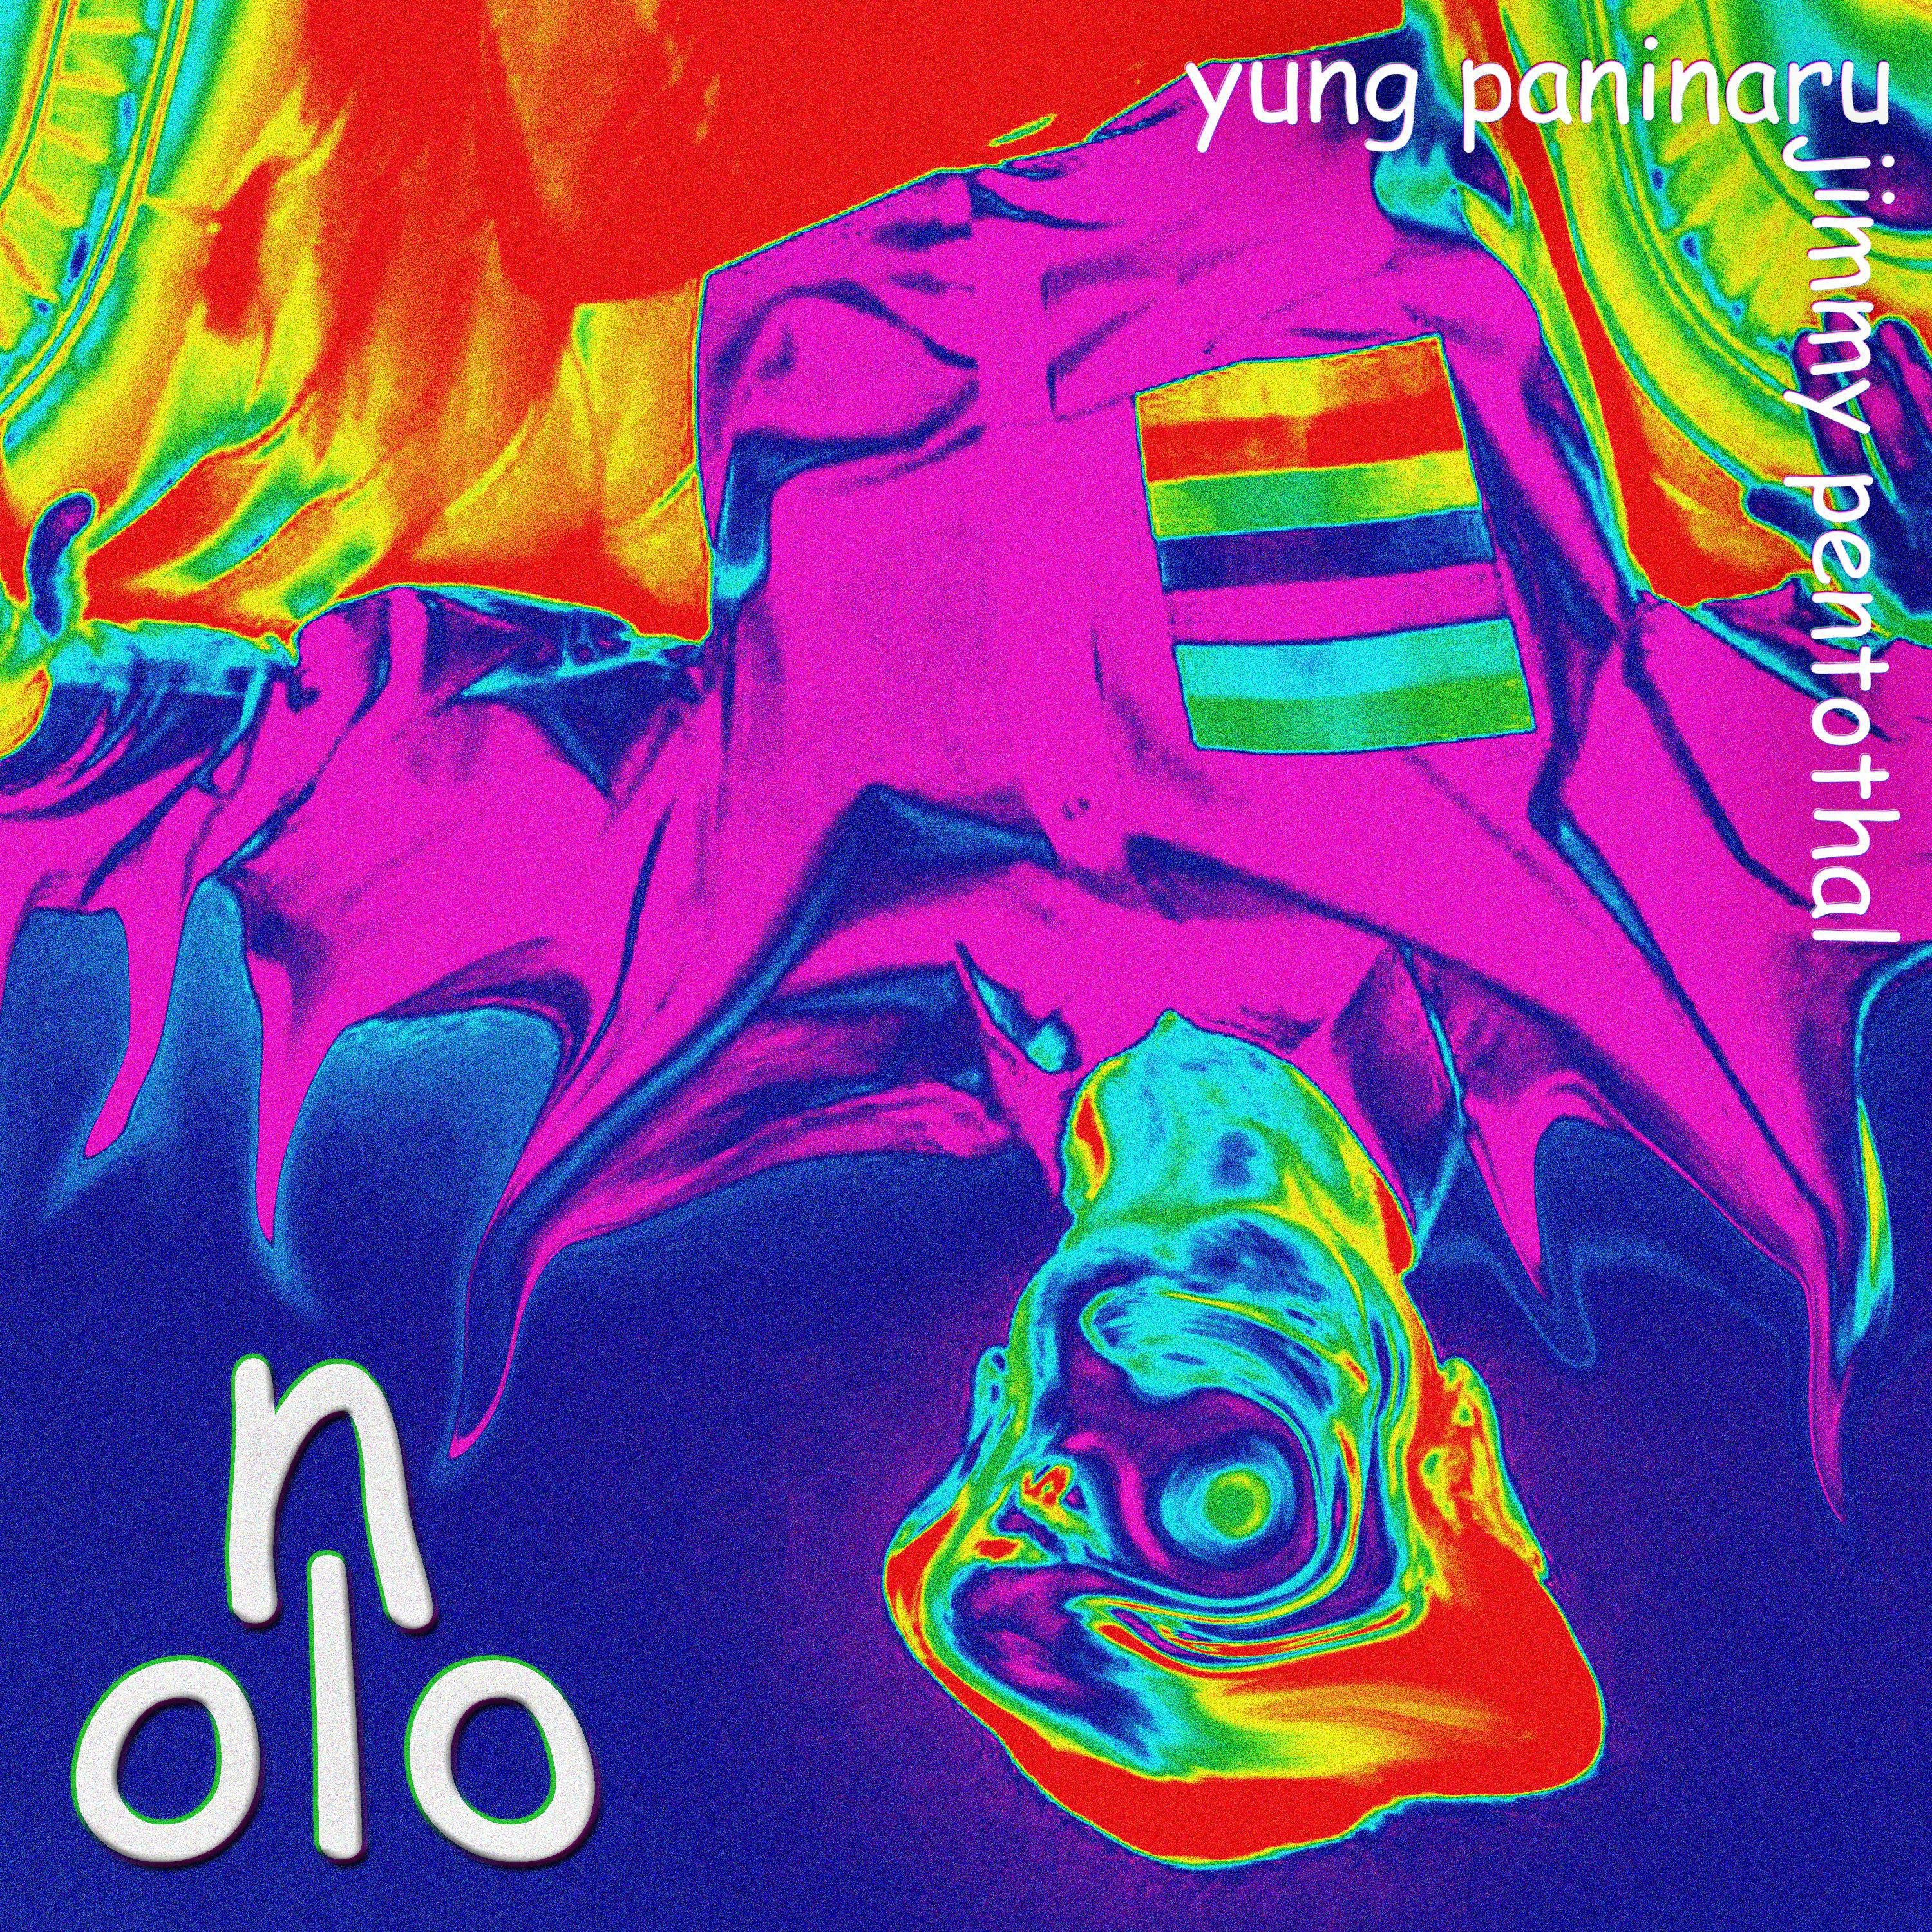 yung paninaru - NOLO (feat. P38)